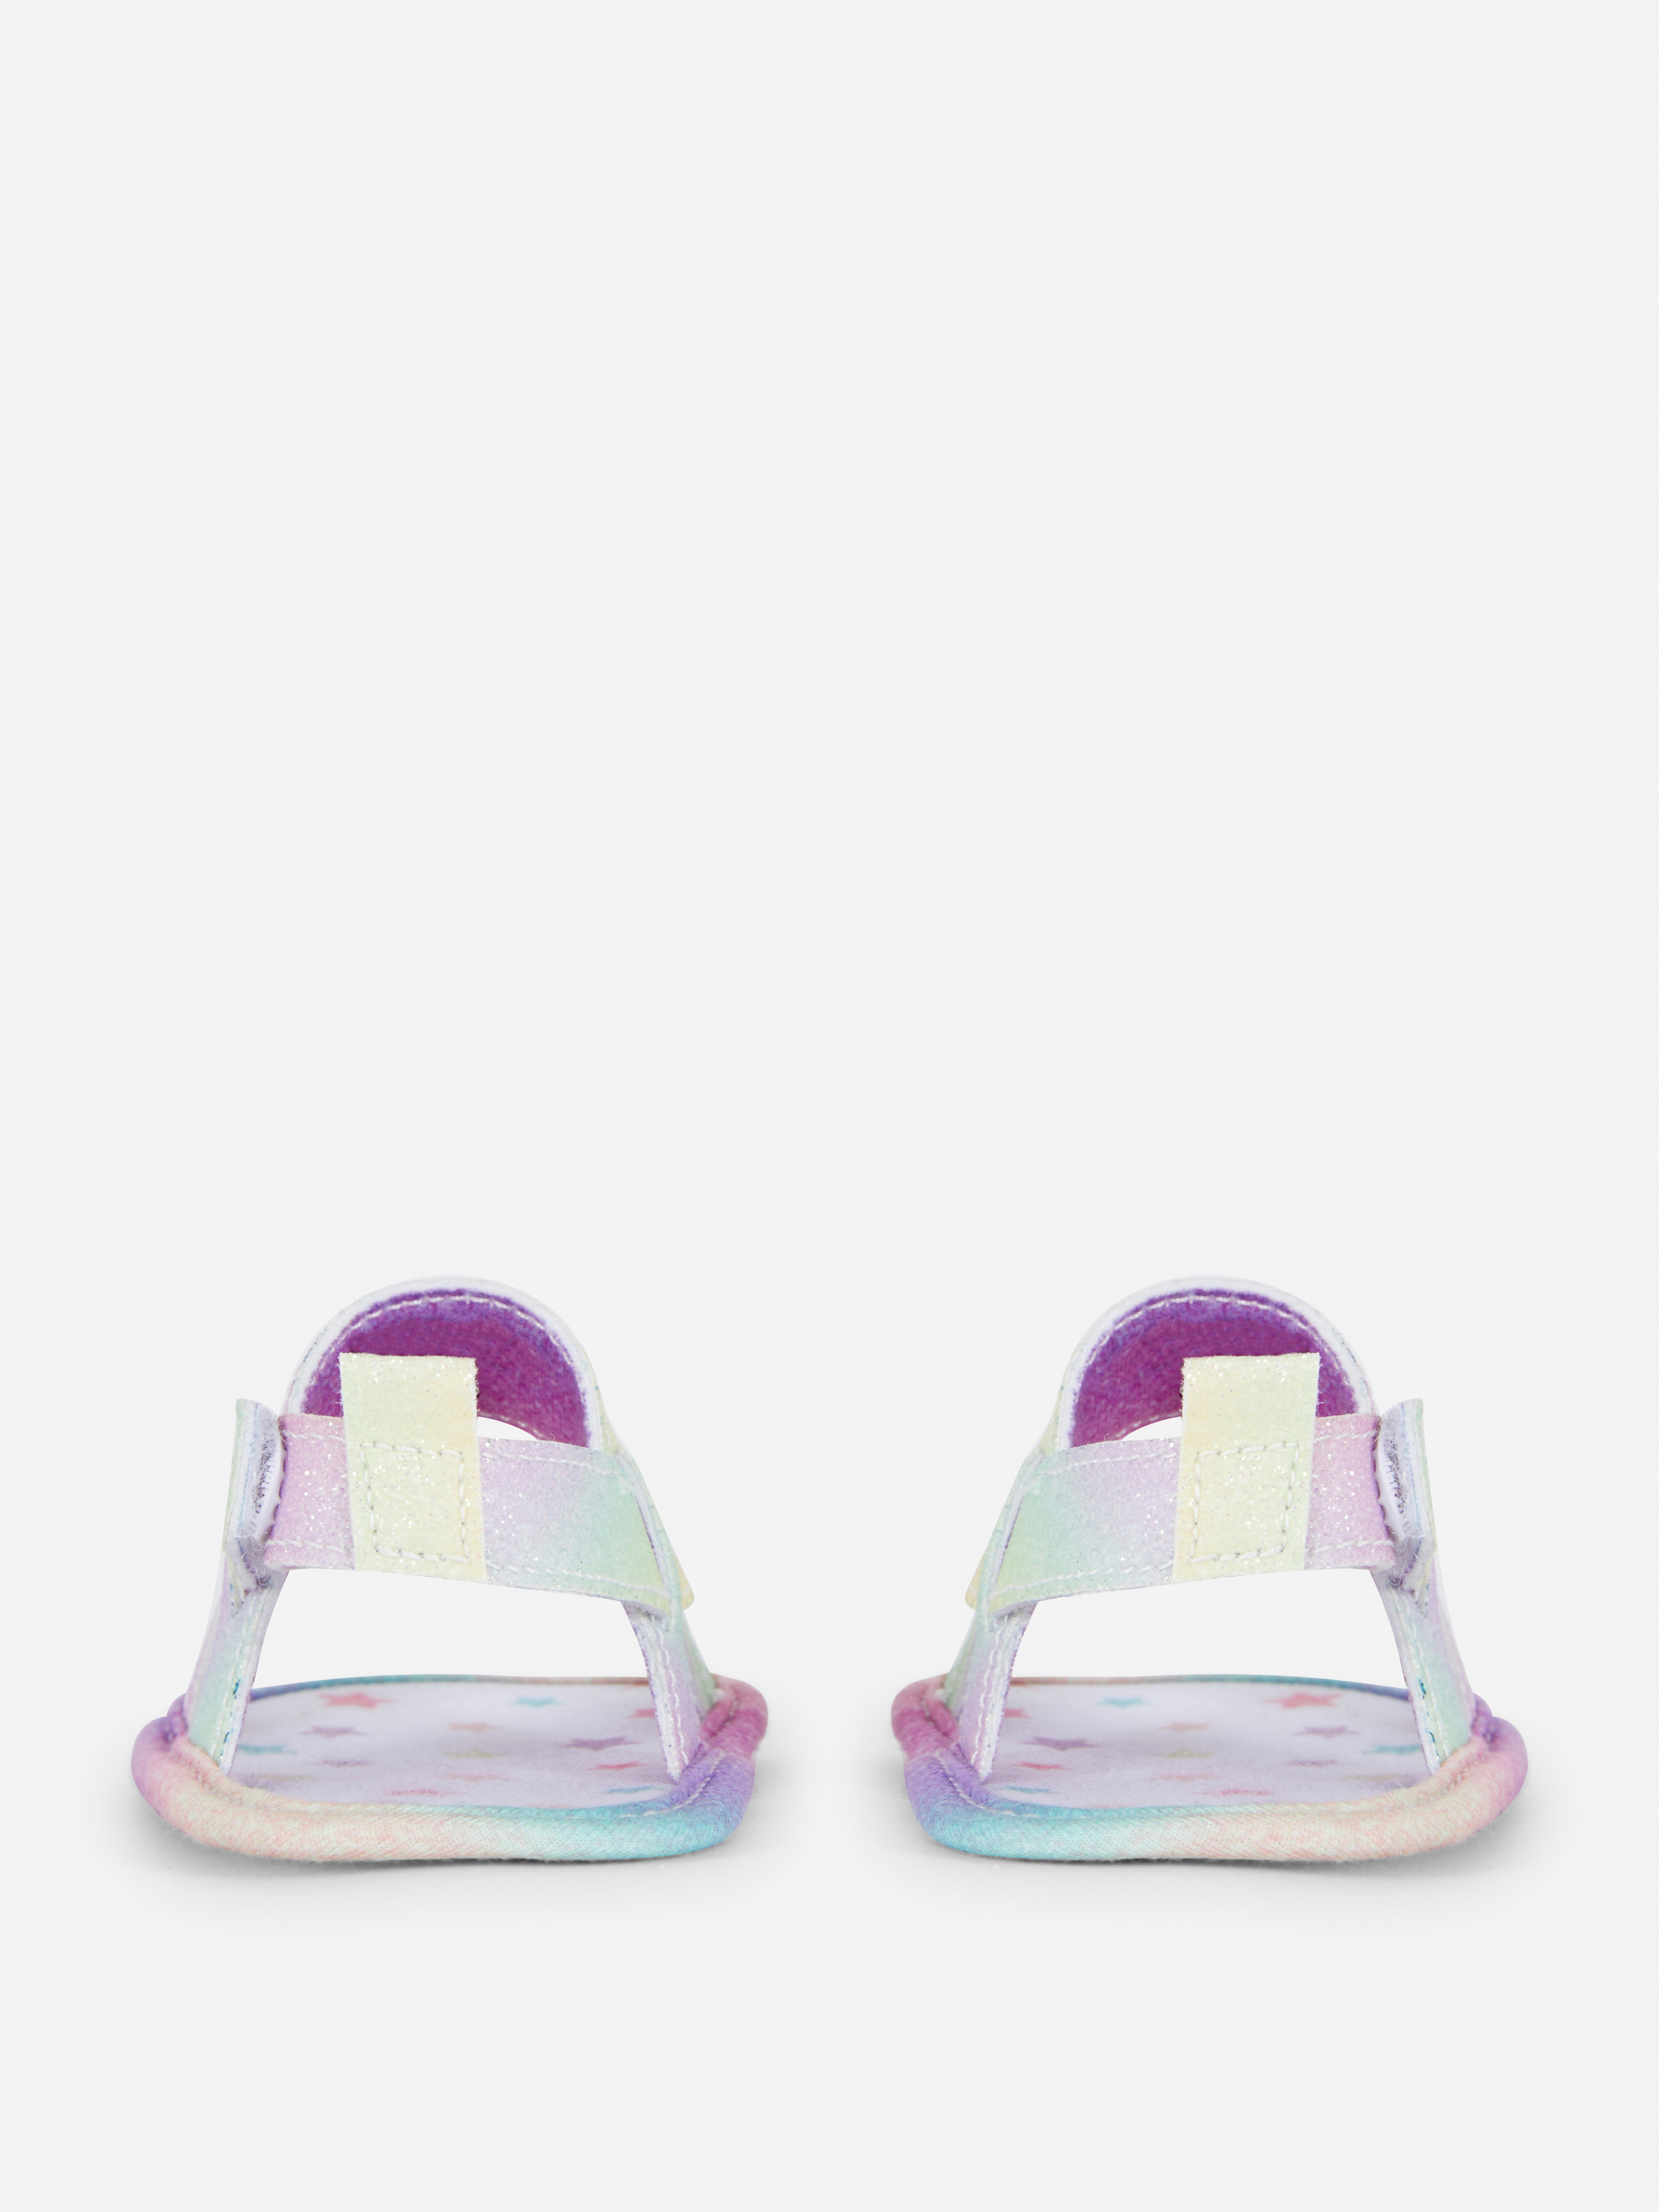 Regenbogen-Sandalen mit überkreuzten Riemchen